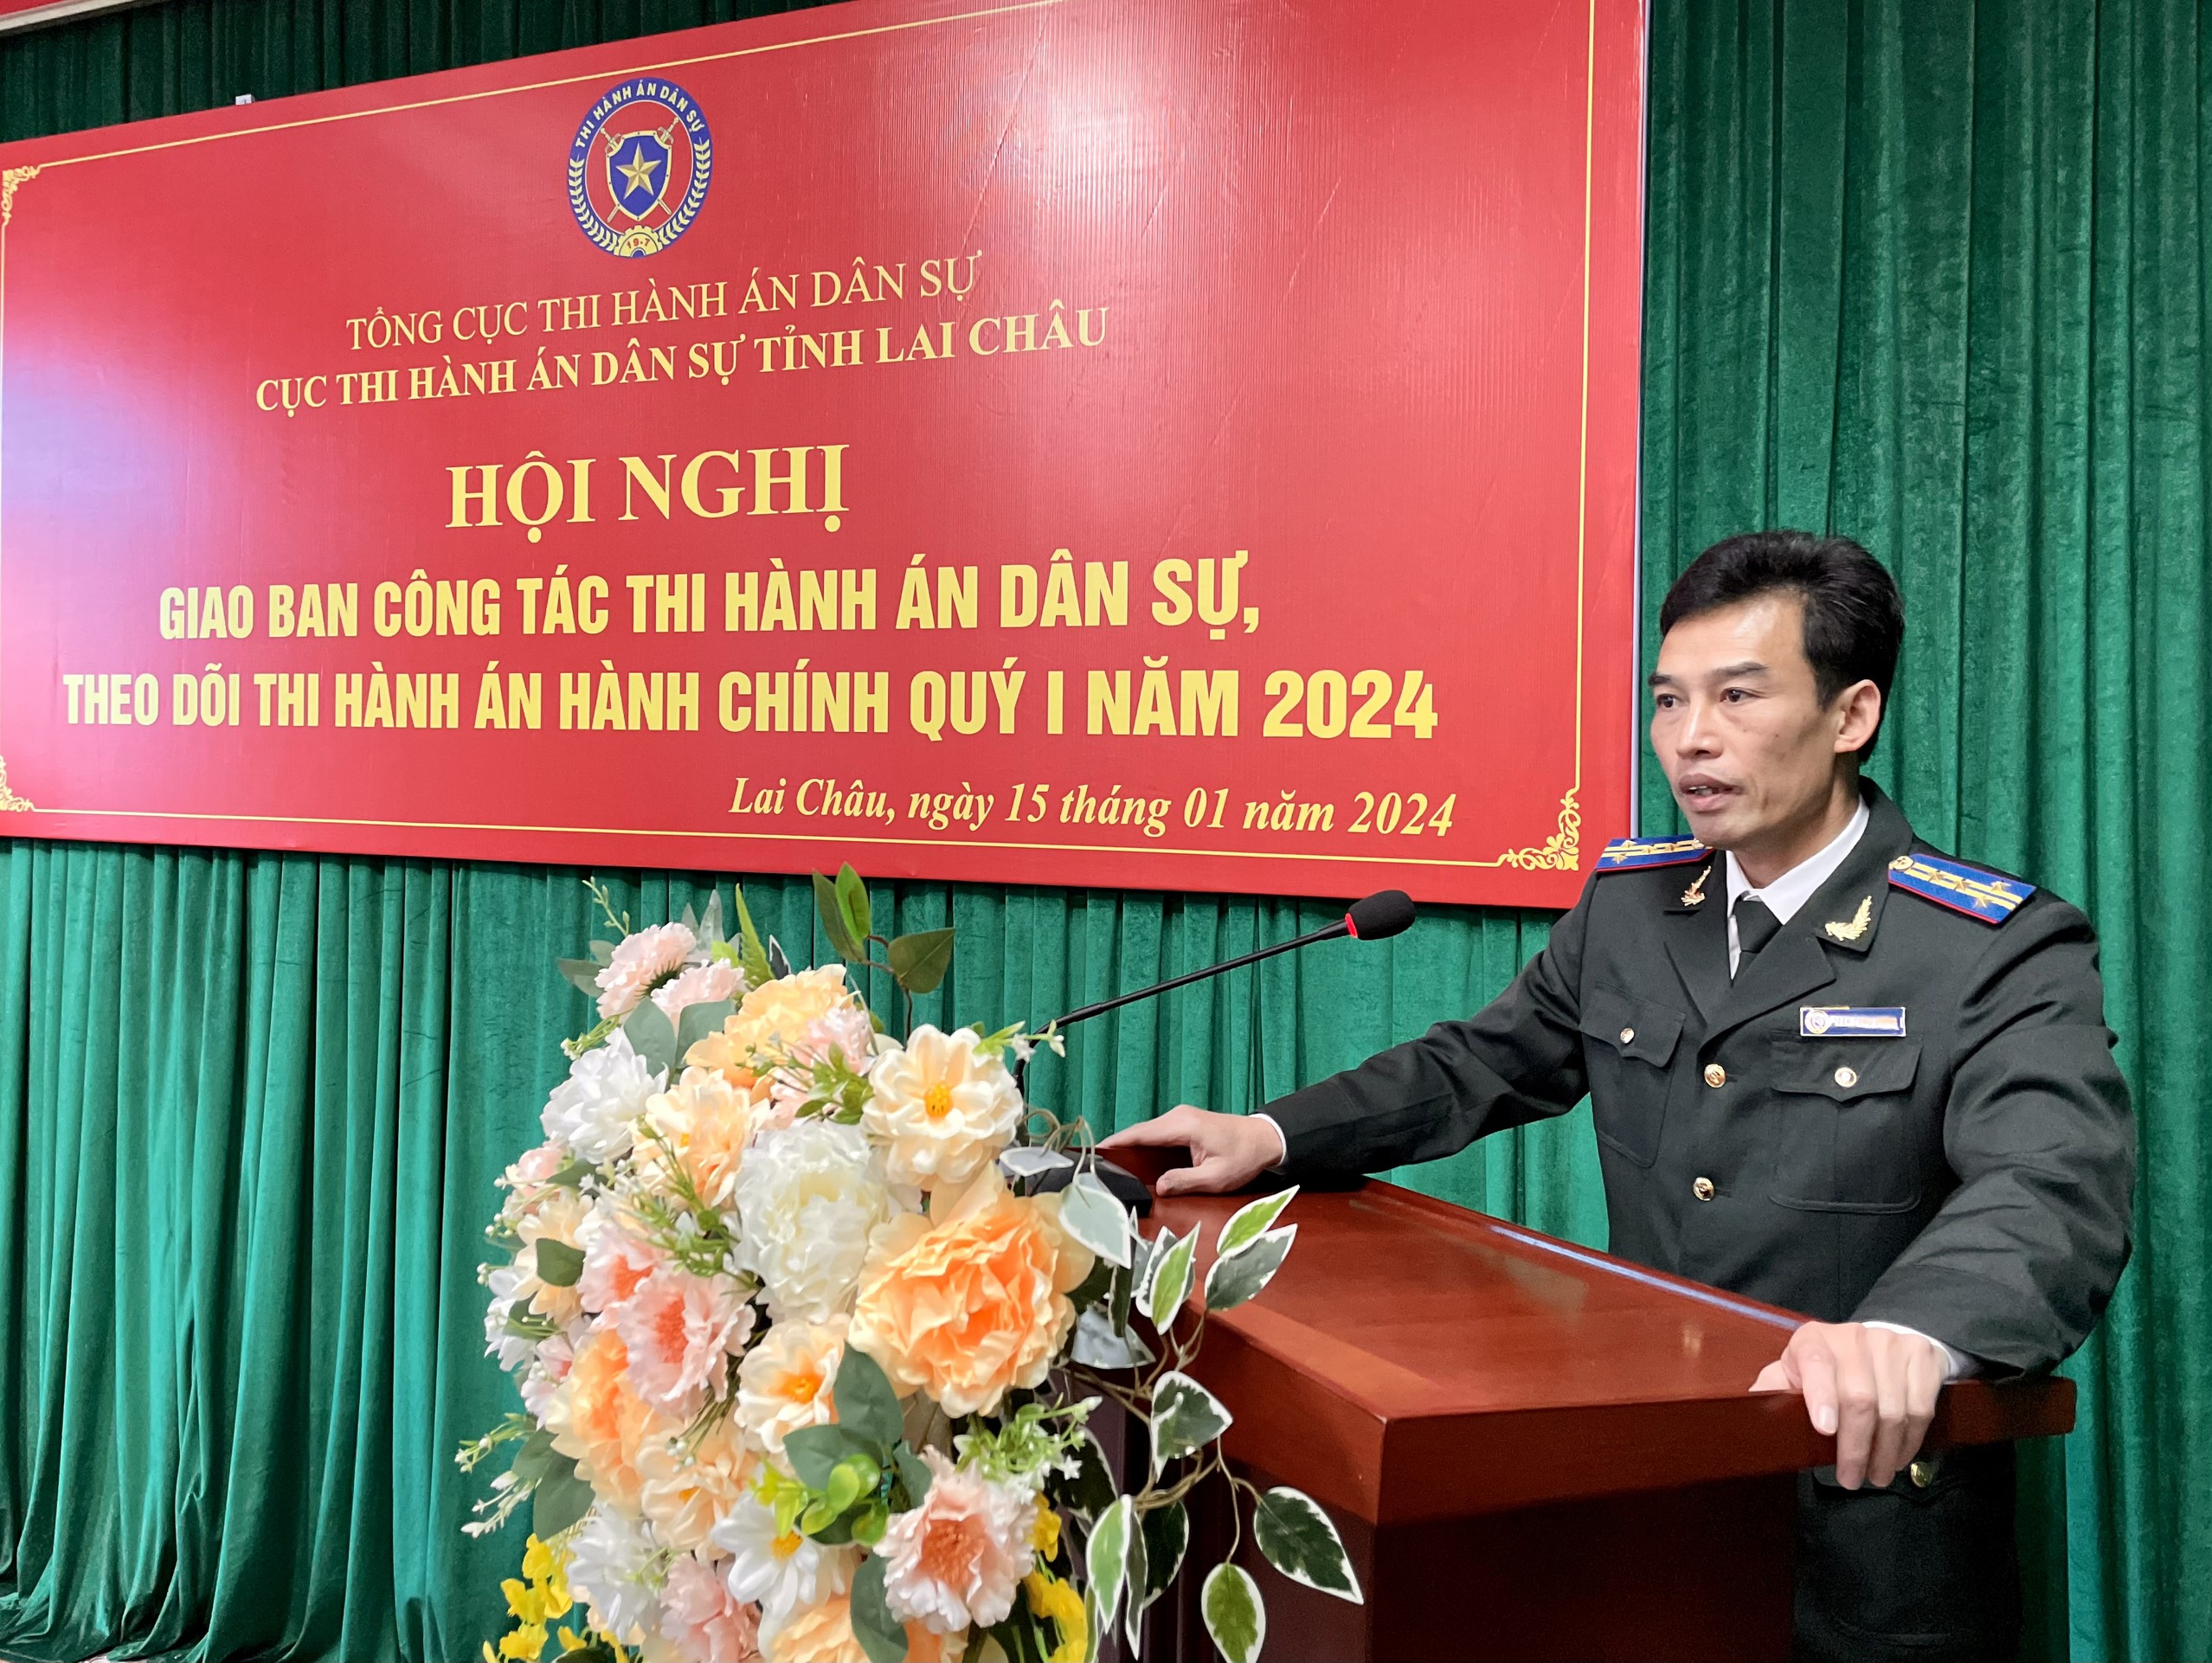 Cục Thi hành án dân sự tỉnh Lai Châu tổ chức hội nghị giao ban công tác  thi hành án dân sự, theo dõi thi hành án hành chính quý I năm 2024